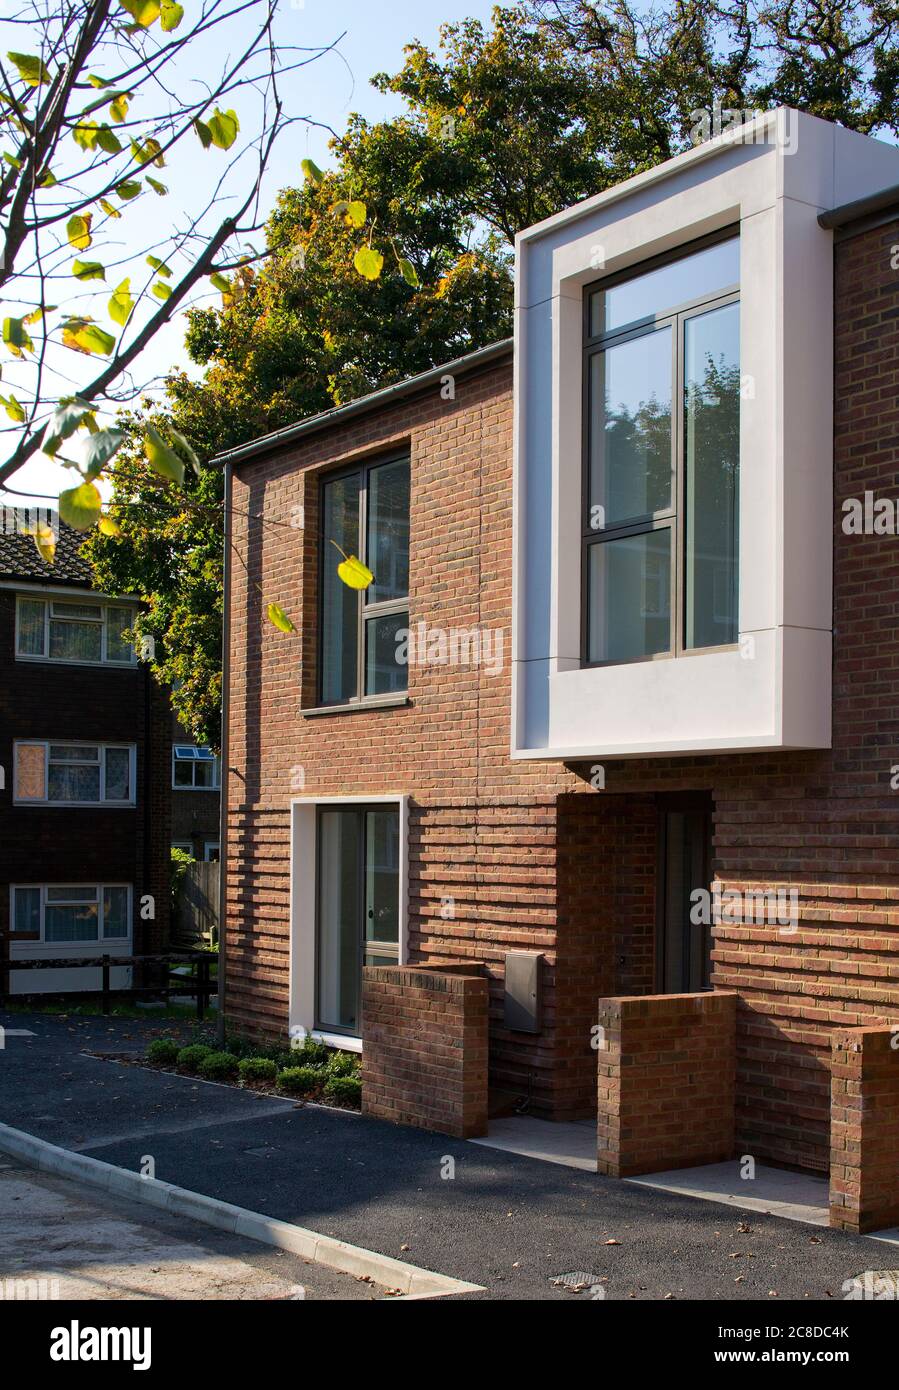 Außenansicht. Ravensdale & Rushden Housing Scheme, Upper Norwood, Großbritannien. Architekt: HTA Design llp, 2020. Stockfoto